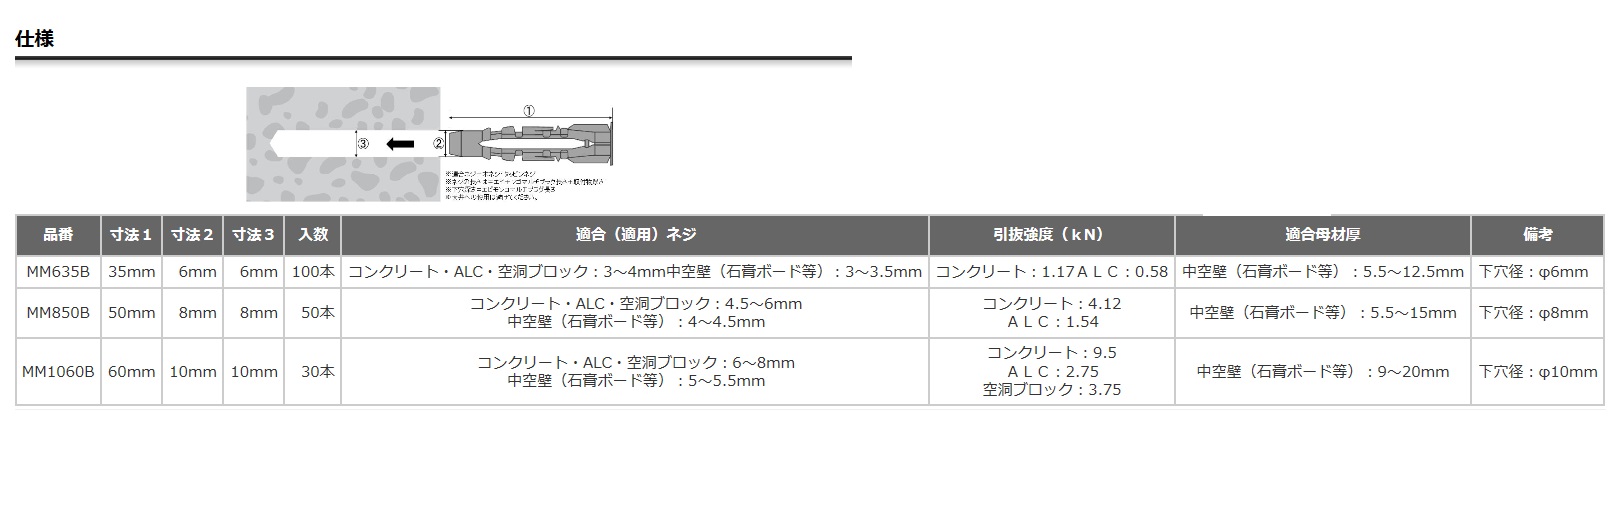 ロブテックス エビモンゴマルチプラグ MM635B・MM850B・MM1060B / 秋本勇吉商店 WEBショップ